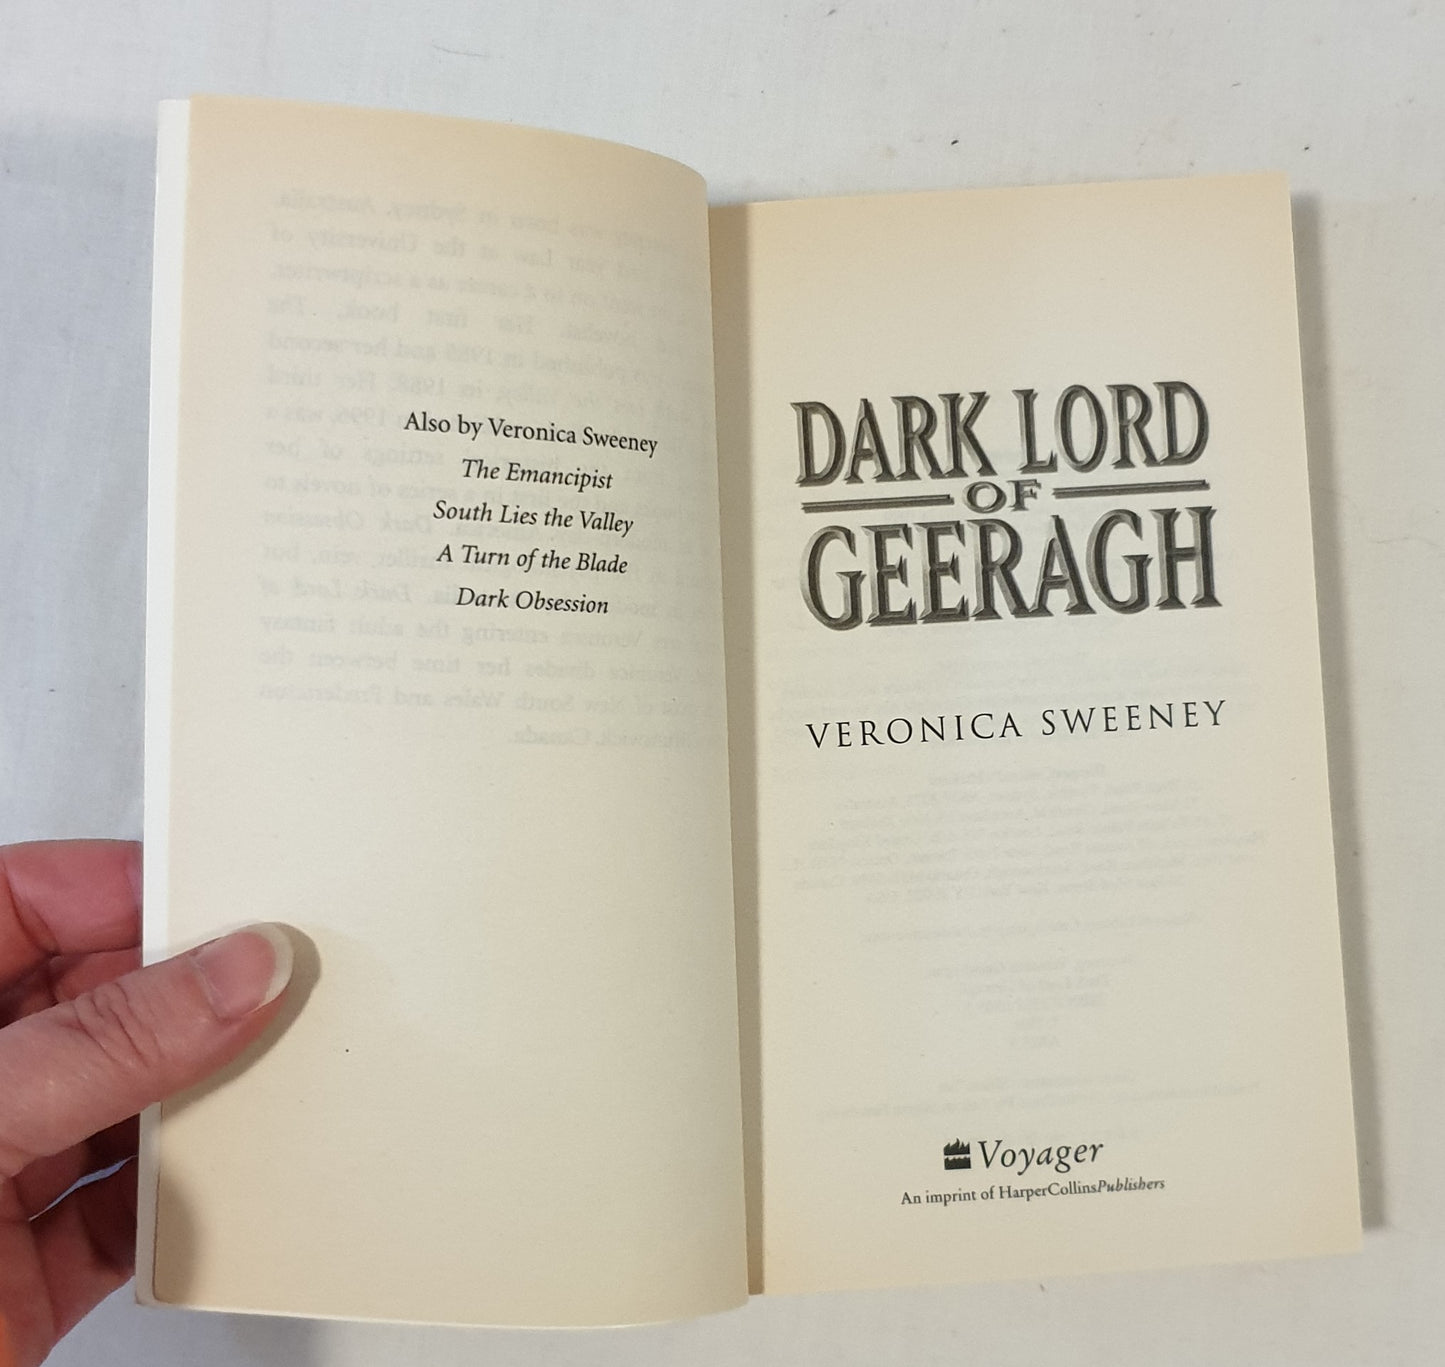 Dark Lord of Geeragh by Veronica Sweeney